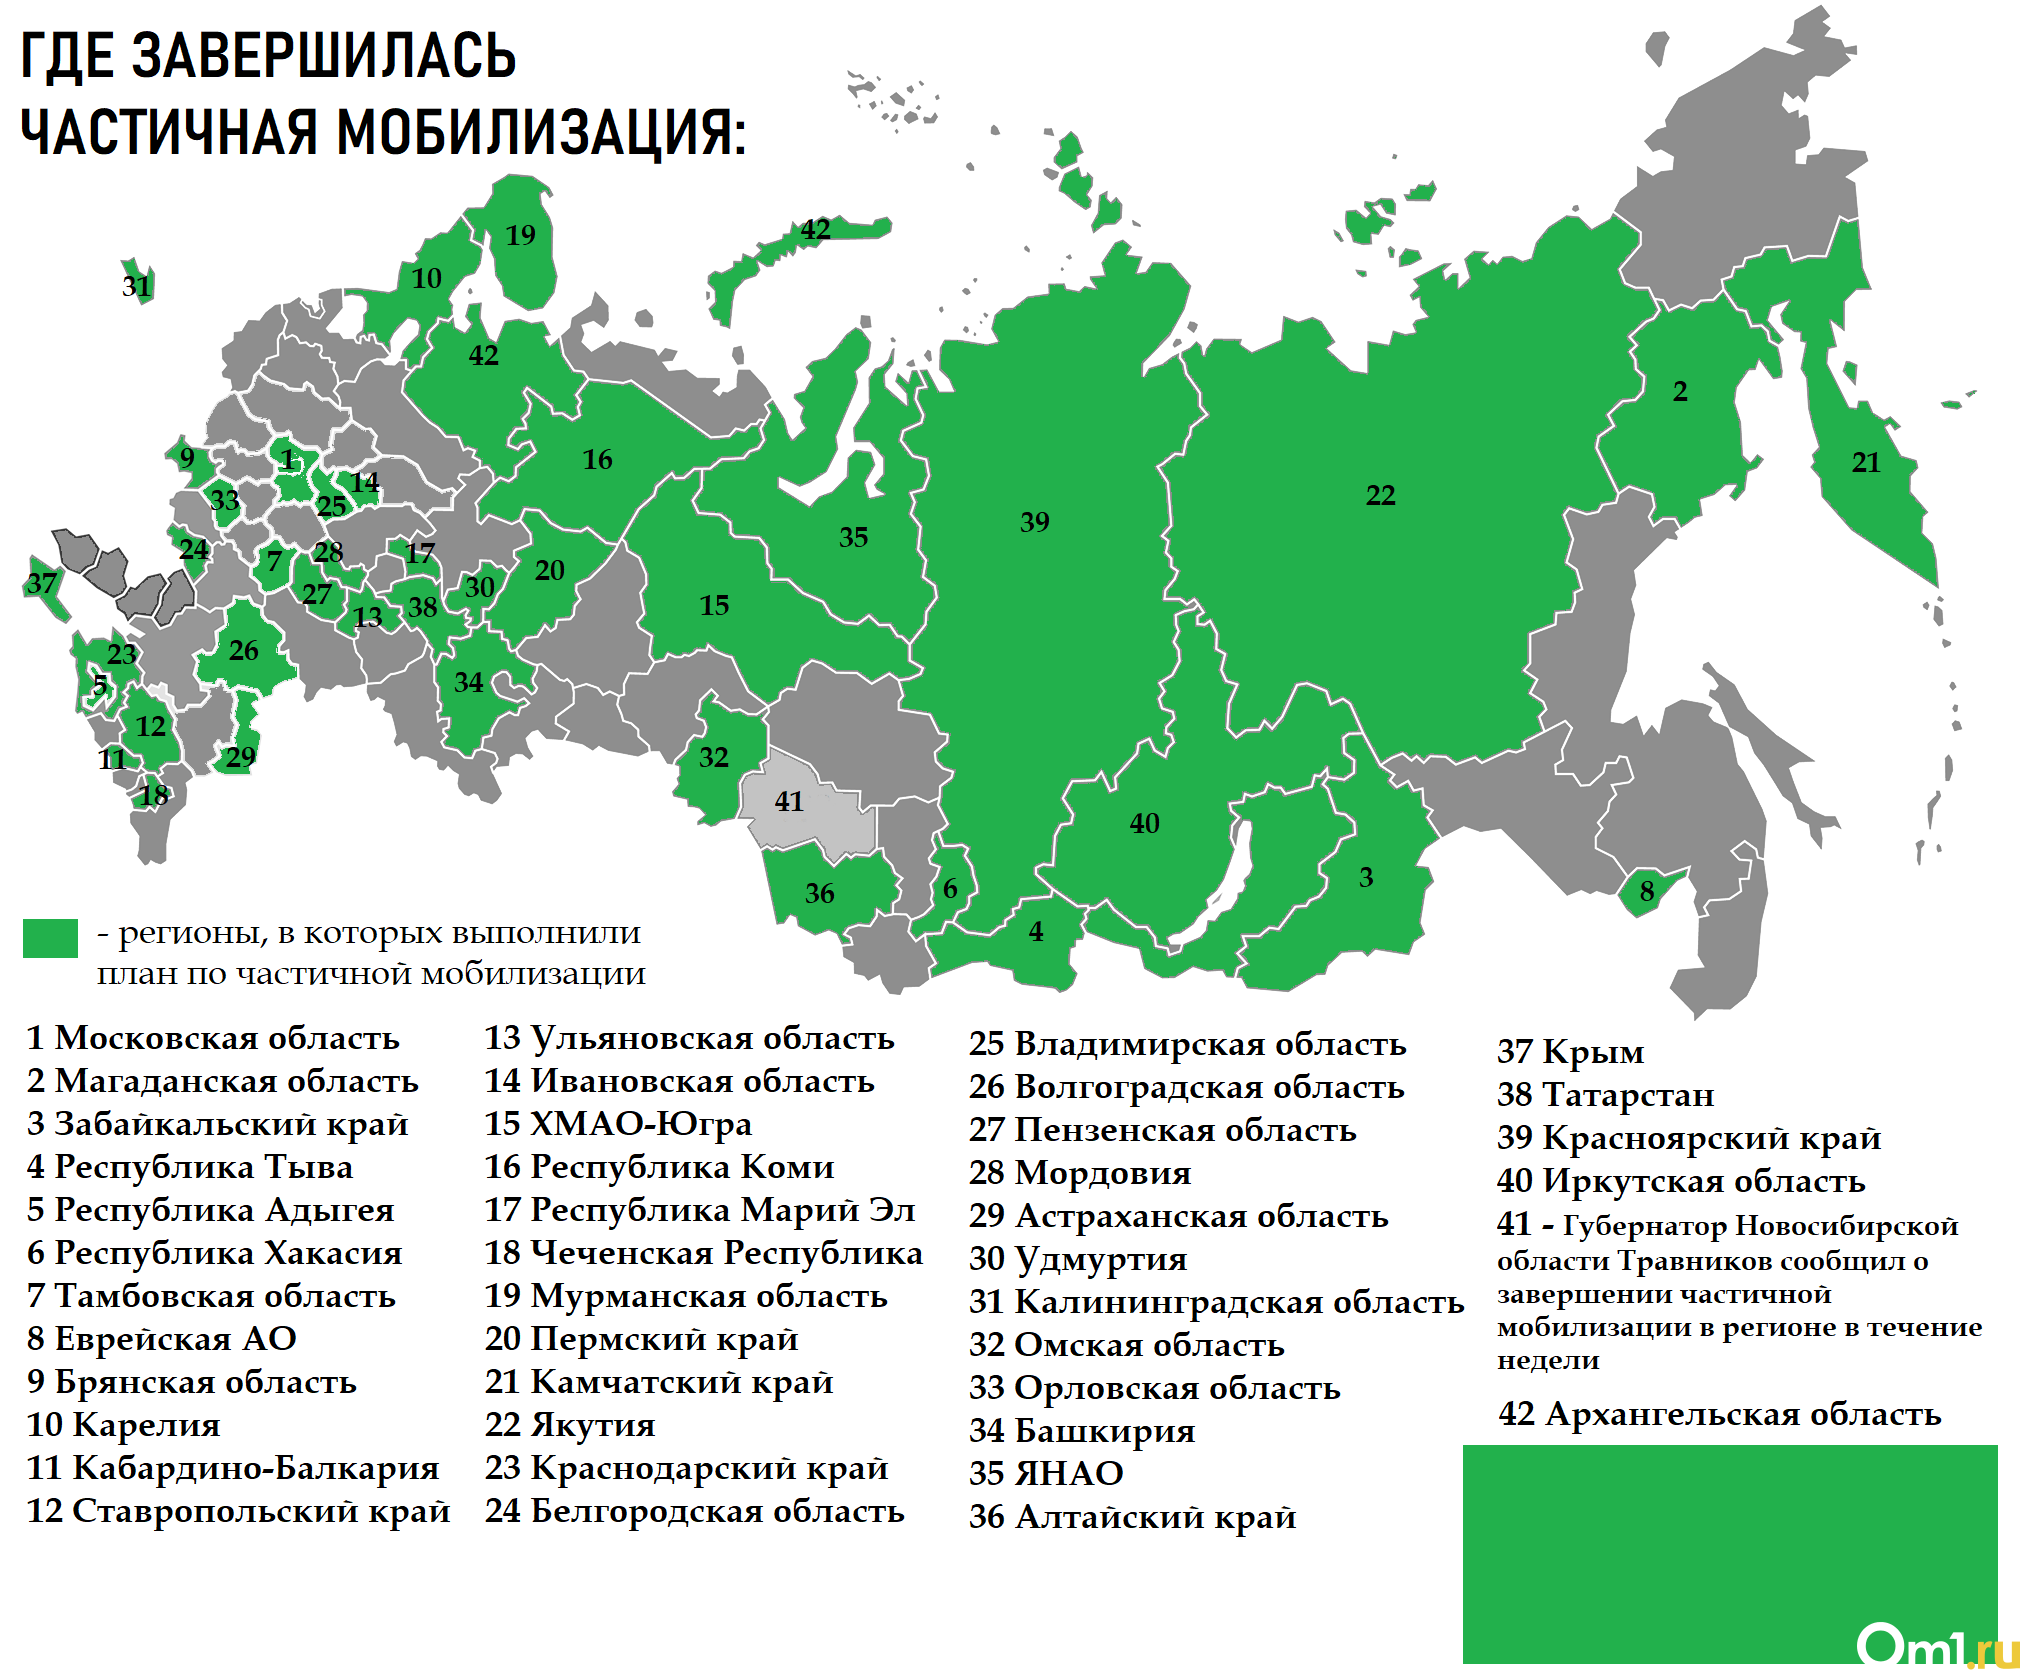 Сколько мобилизованных в россии на сегодняшний день. Карта мобилизации. Карта мобилизации в России. План мобилизации по регионам. Регионы мобилизации в России.